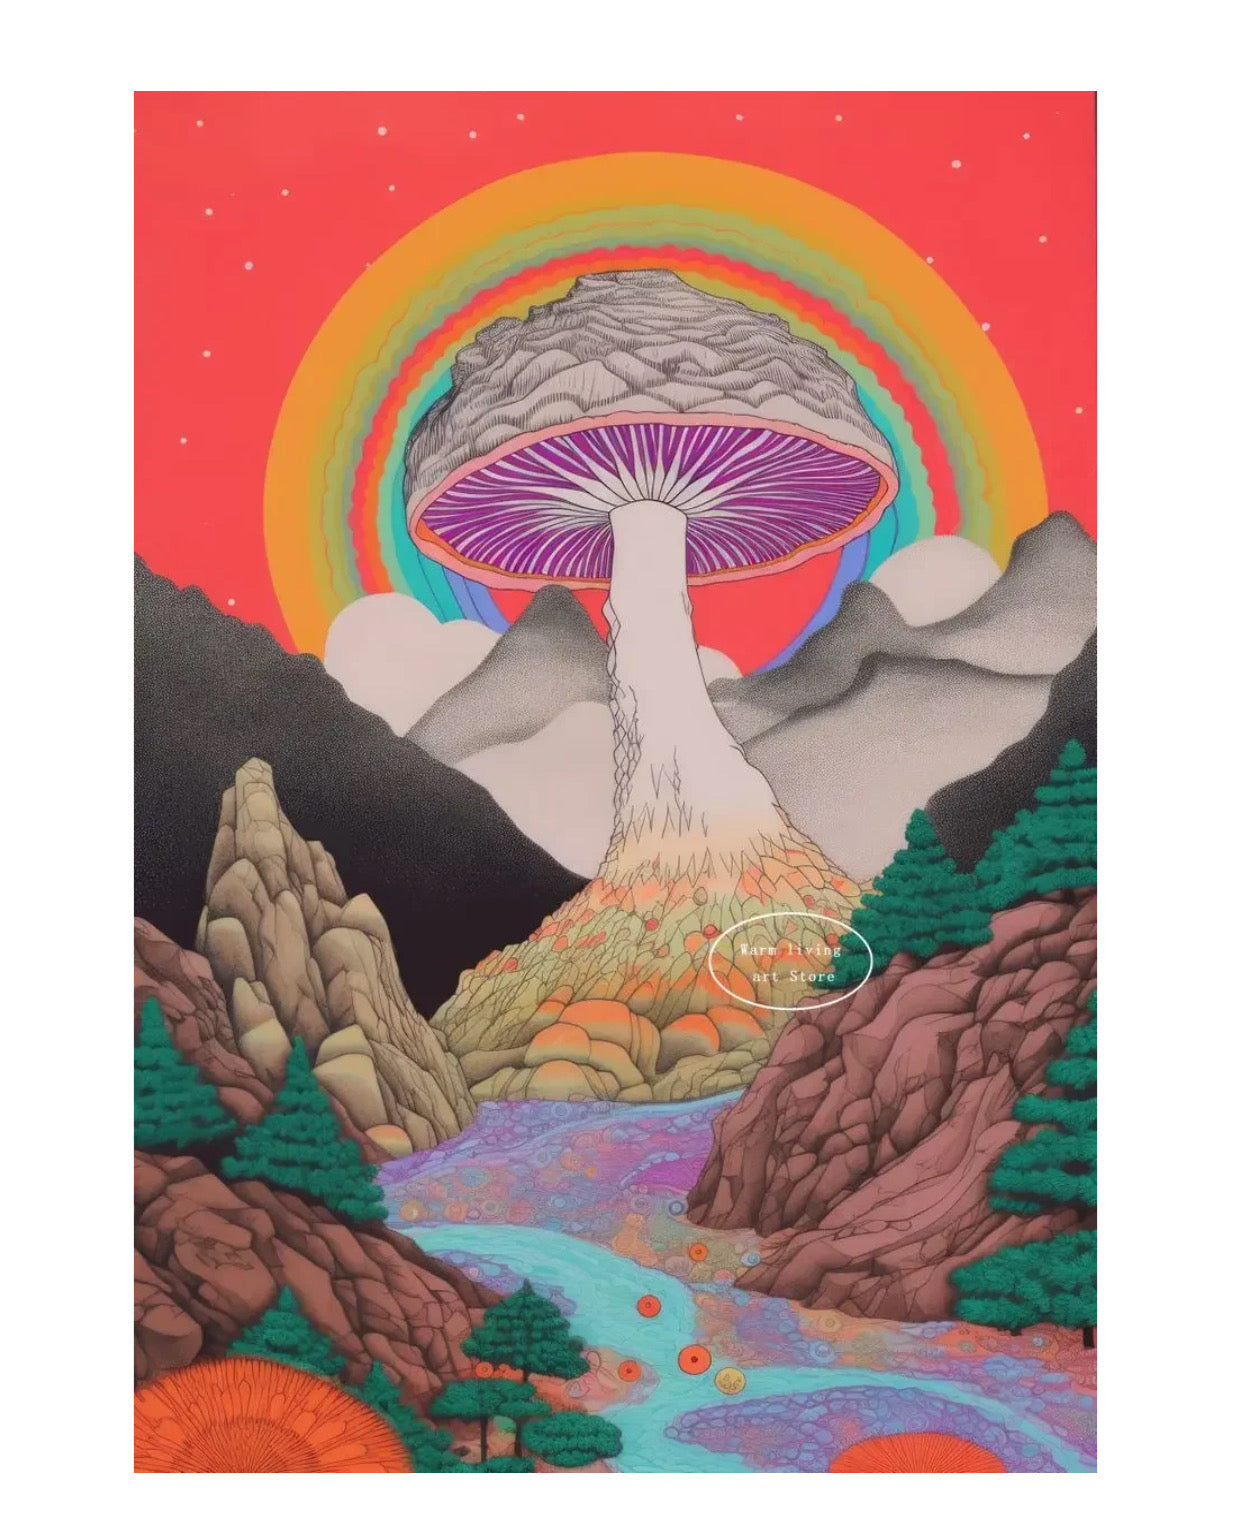 mushroom poster